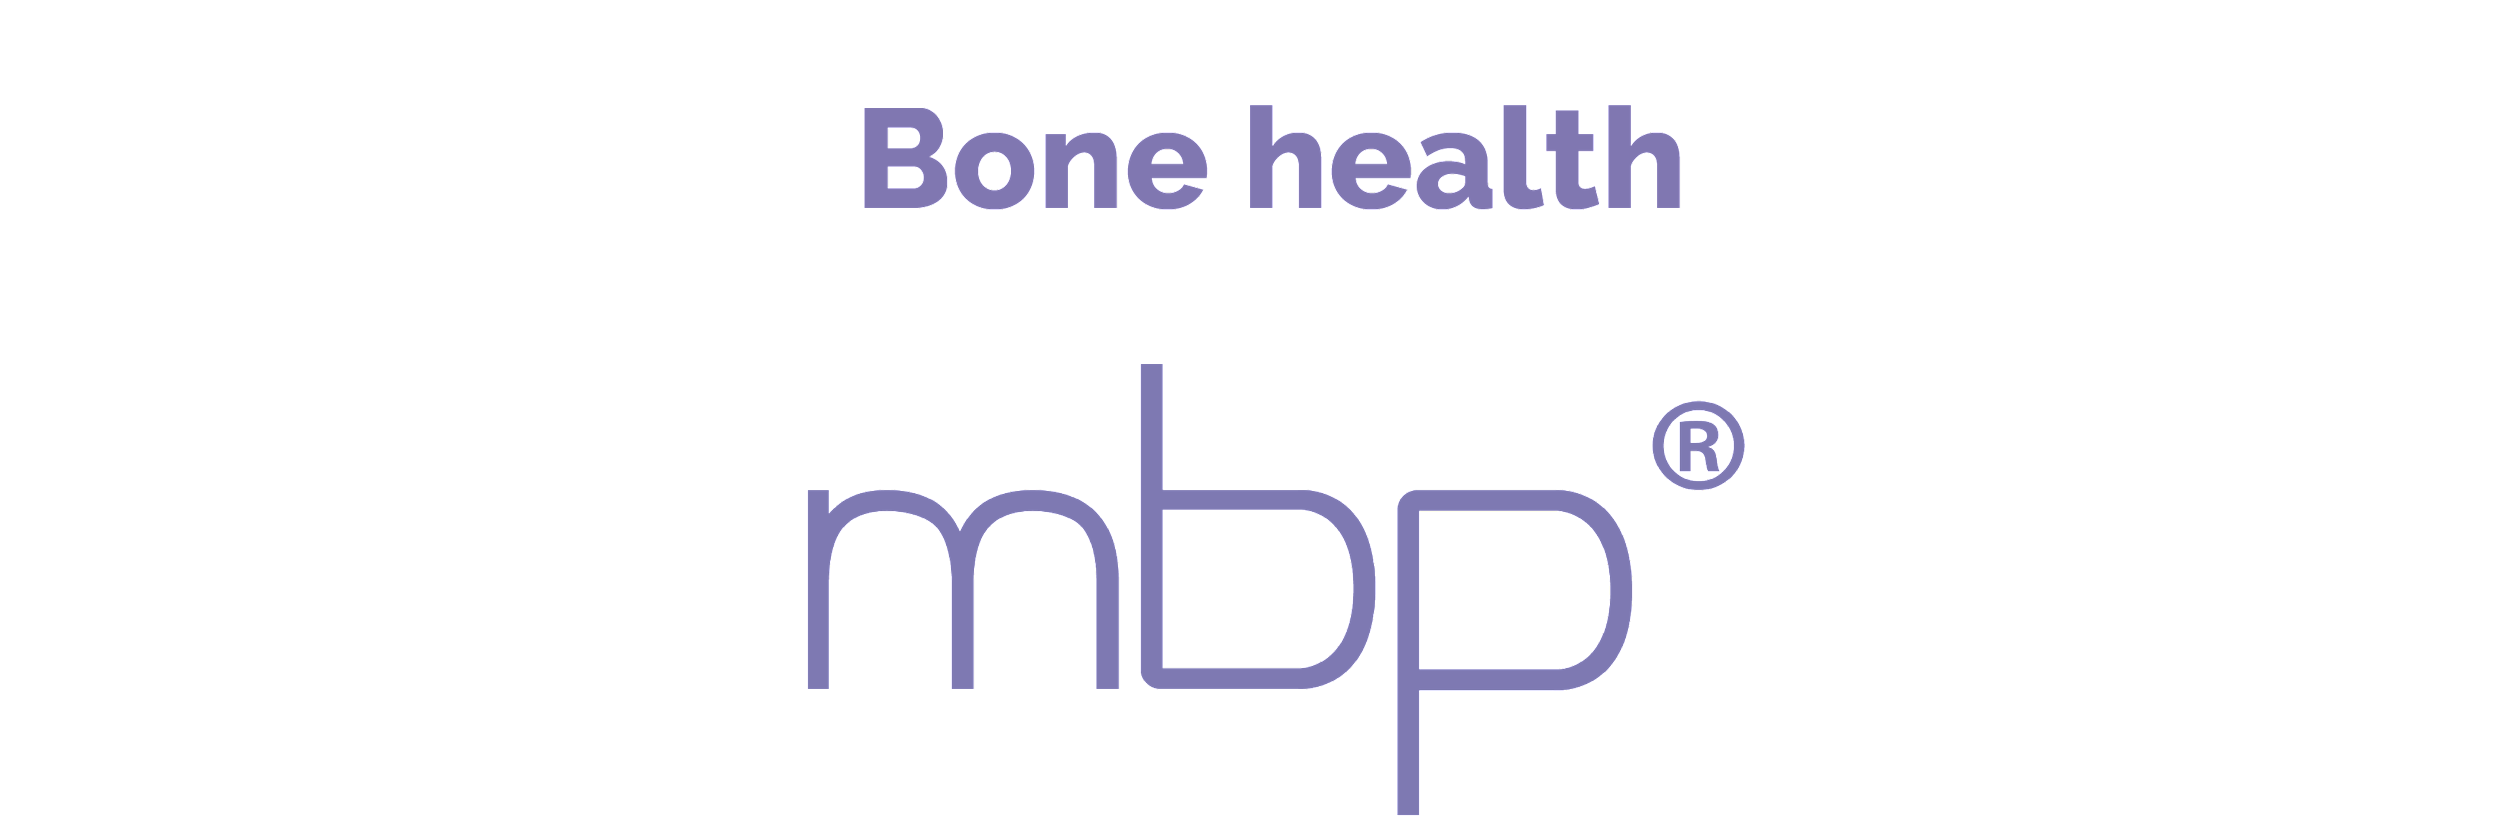 Bone health